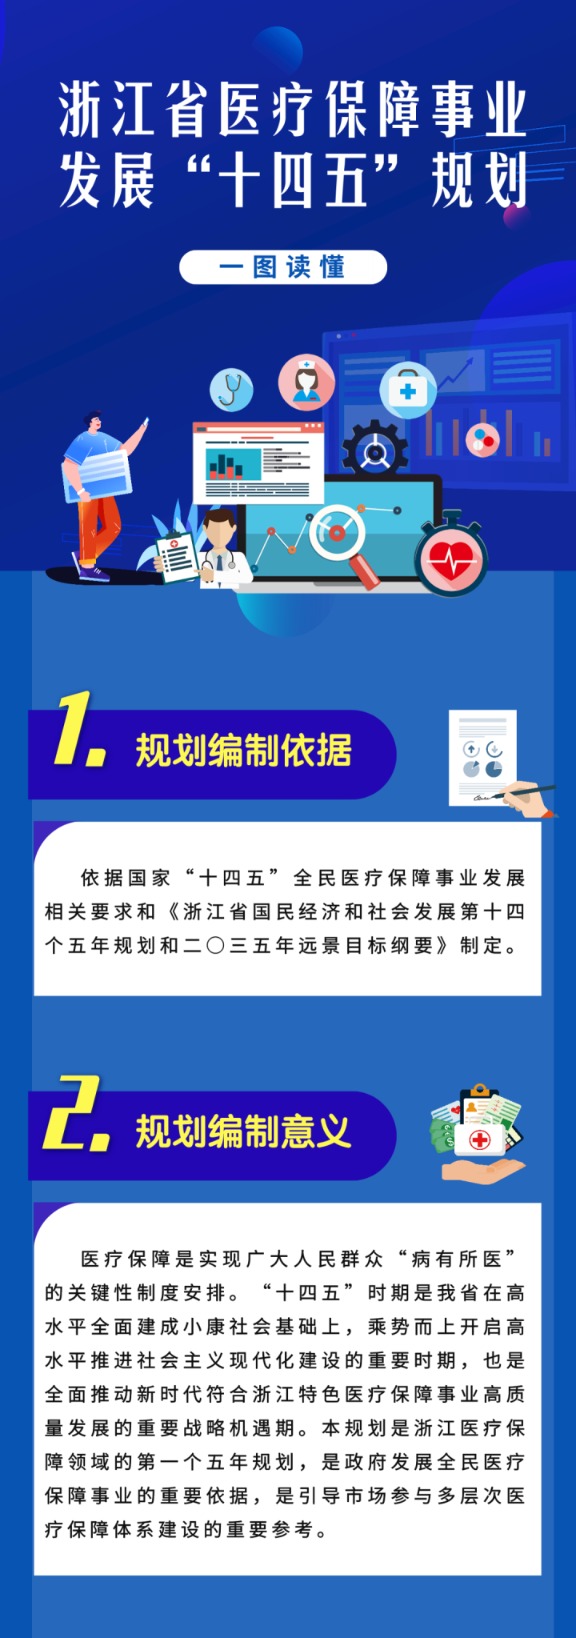 浙江省医疗保障事业发展十四五规划1.png